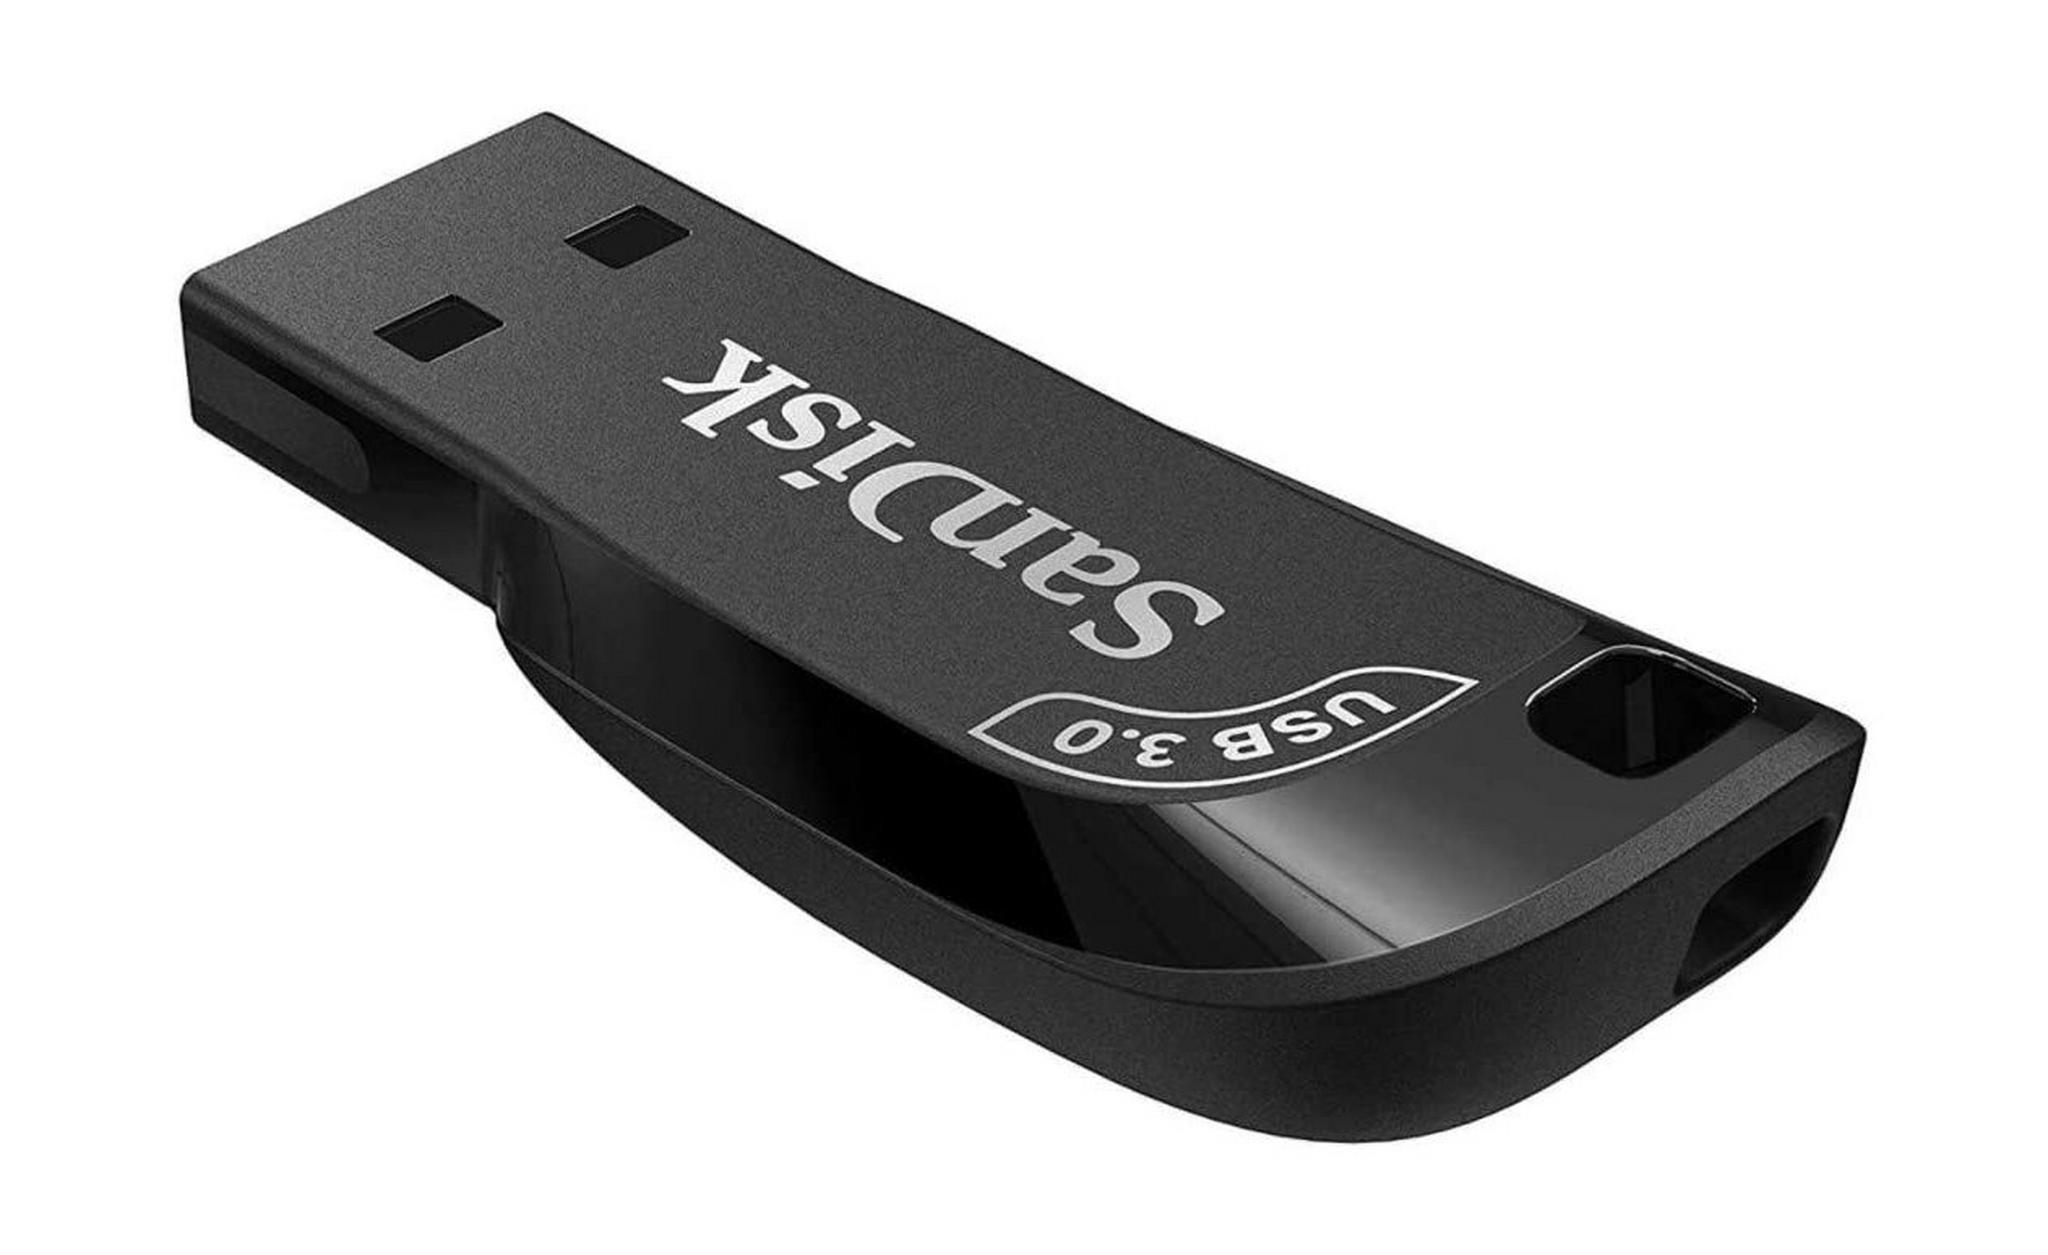 SanDisk Ultra Shift 128GB USB 3.0 Flash Drive